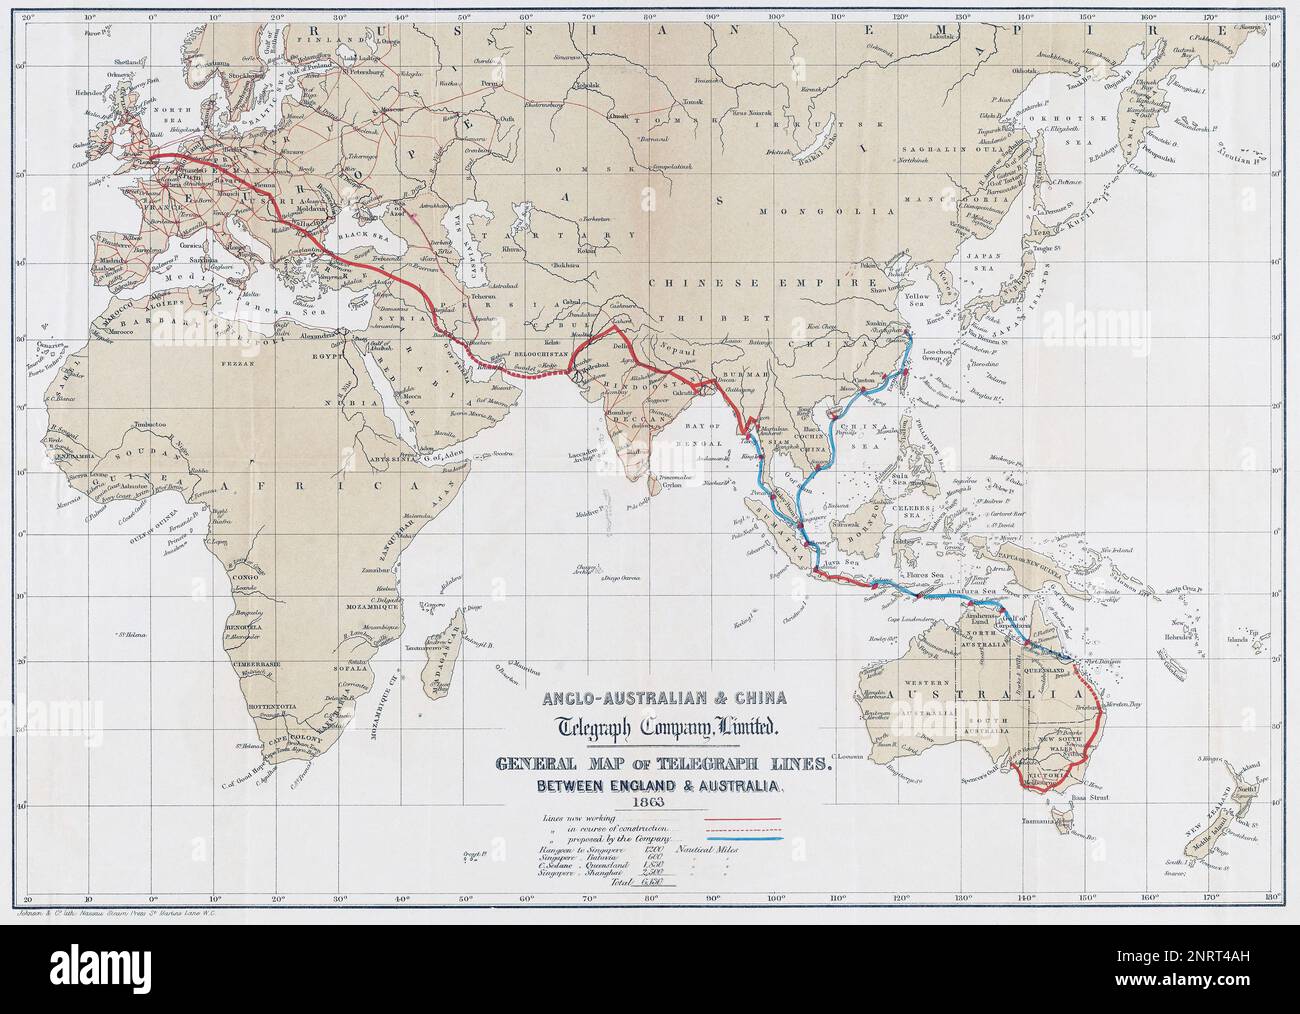 Mappa che mostra le linee telegrafiche tra Inghilterra e Australia nel 1863. Vengono visualizzate le linee proposte per la Cina. Foto Stock